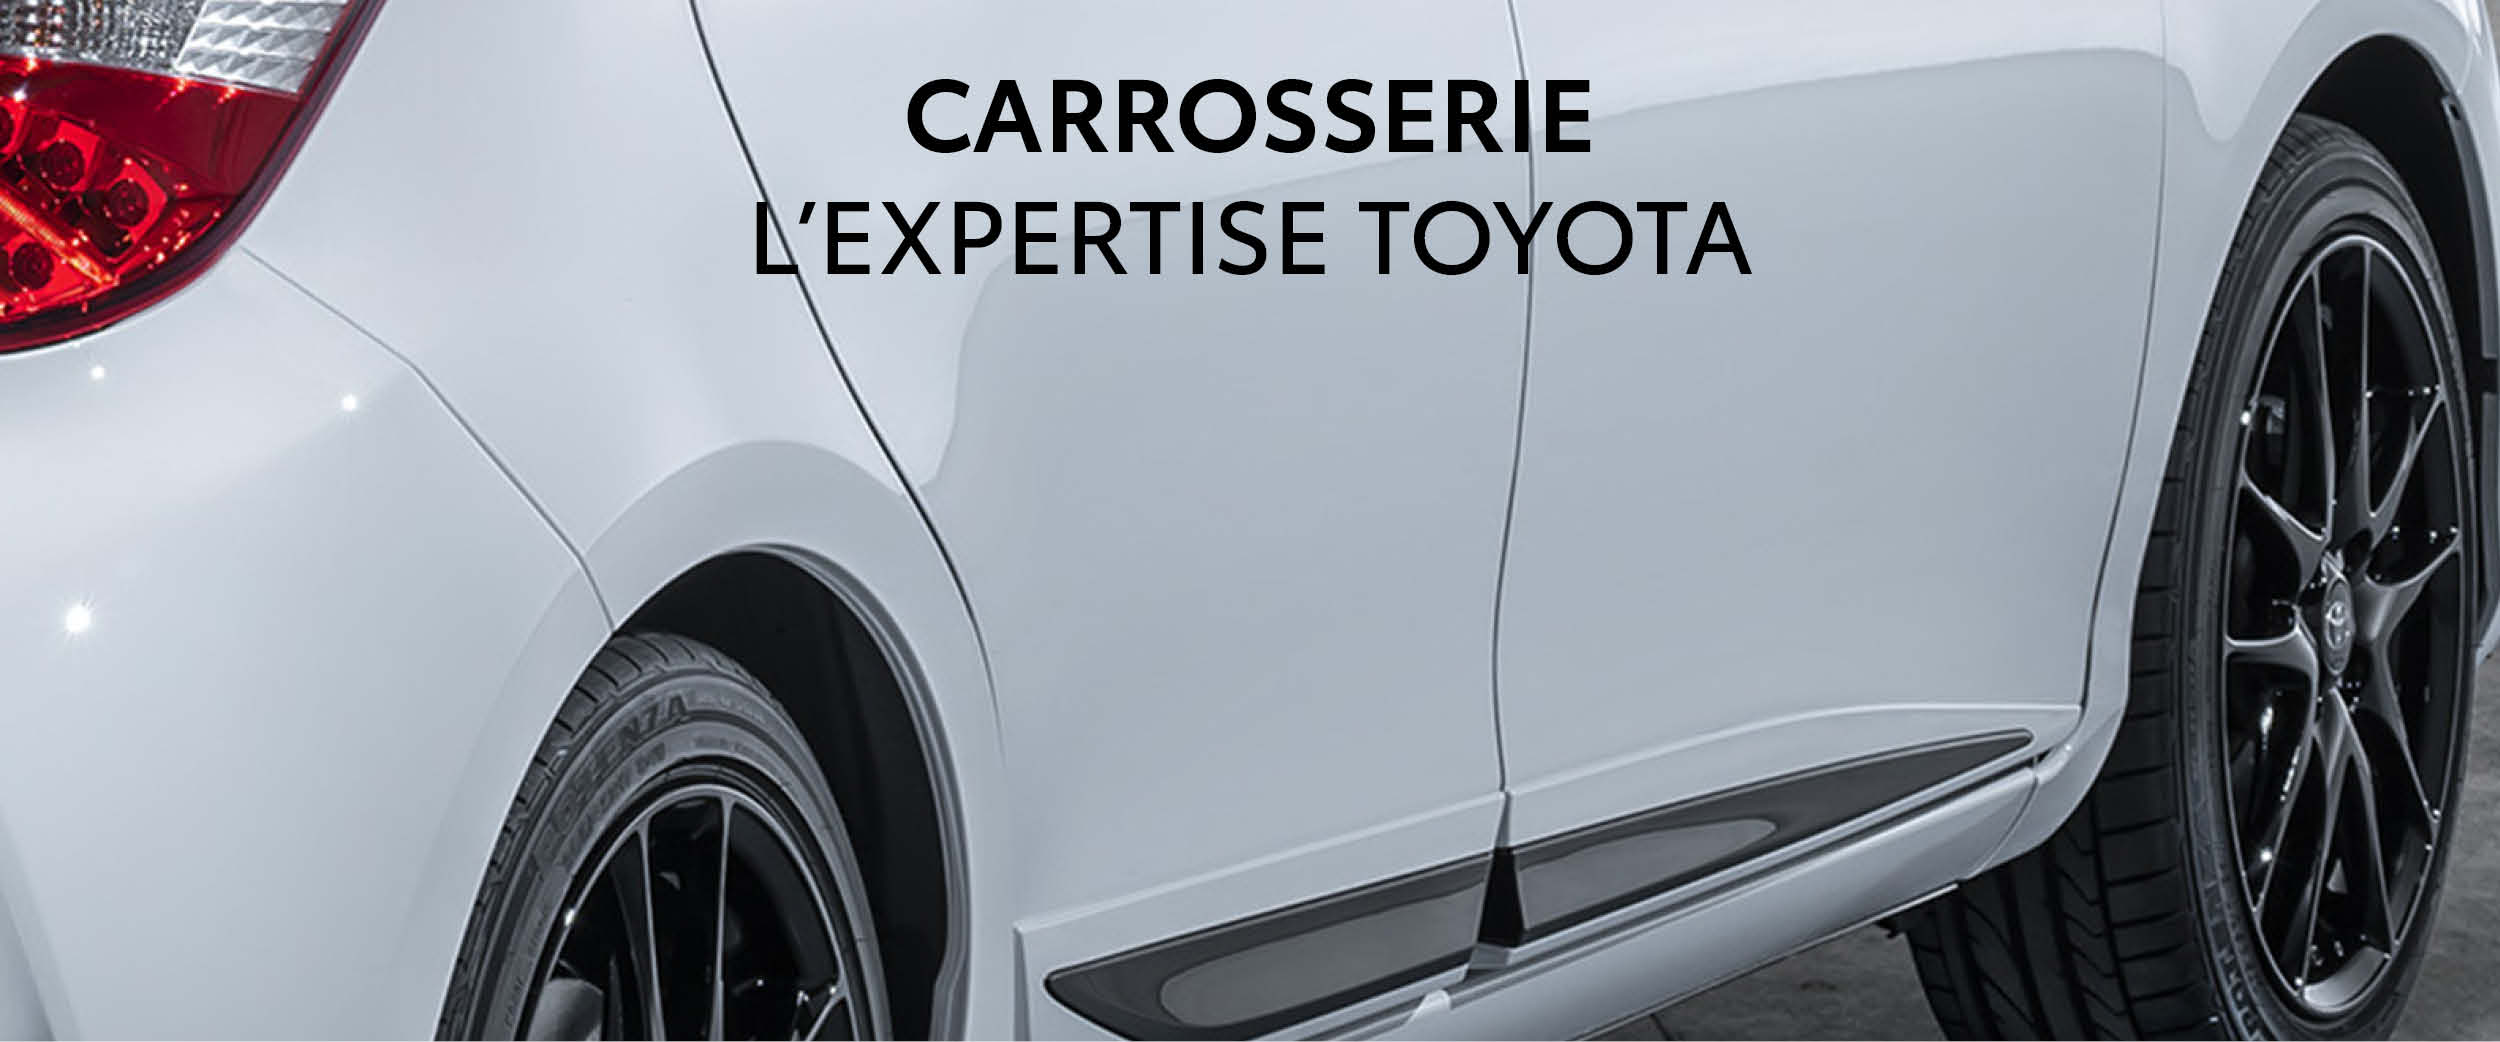 CARROSSERIE - L'expertise Toyota